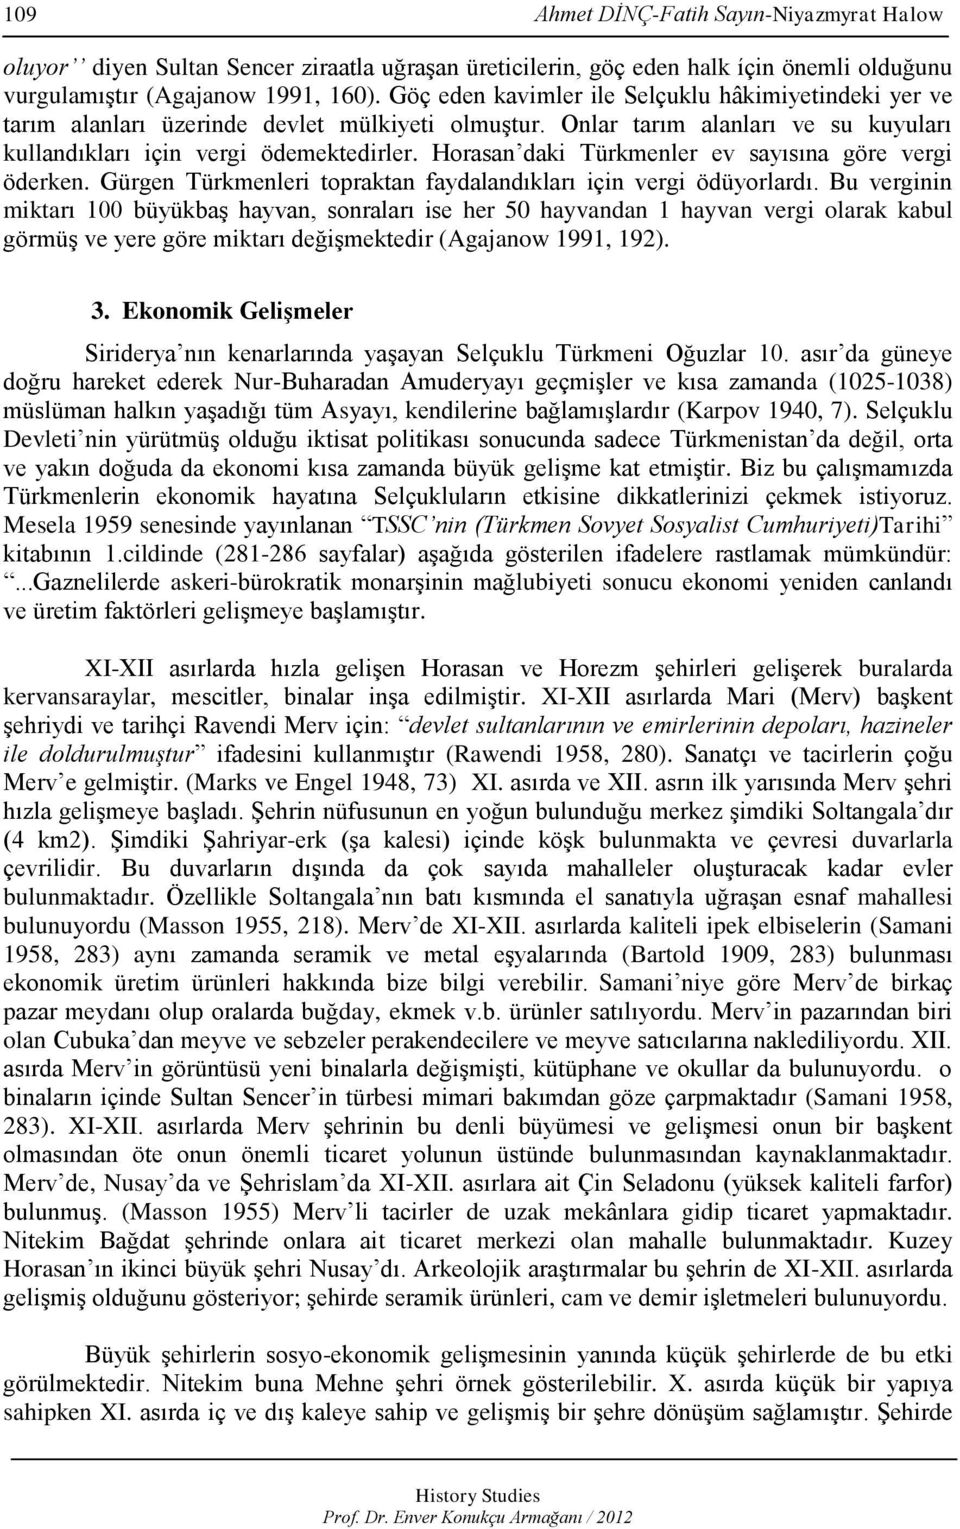 Horasan daki Türkmenler ev sayısına göre vergi öderken. Gürgen Türkmenleri topraktan faydalandıkları için vergi ödüyorlardı.